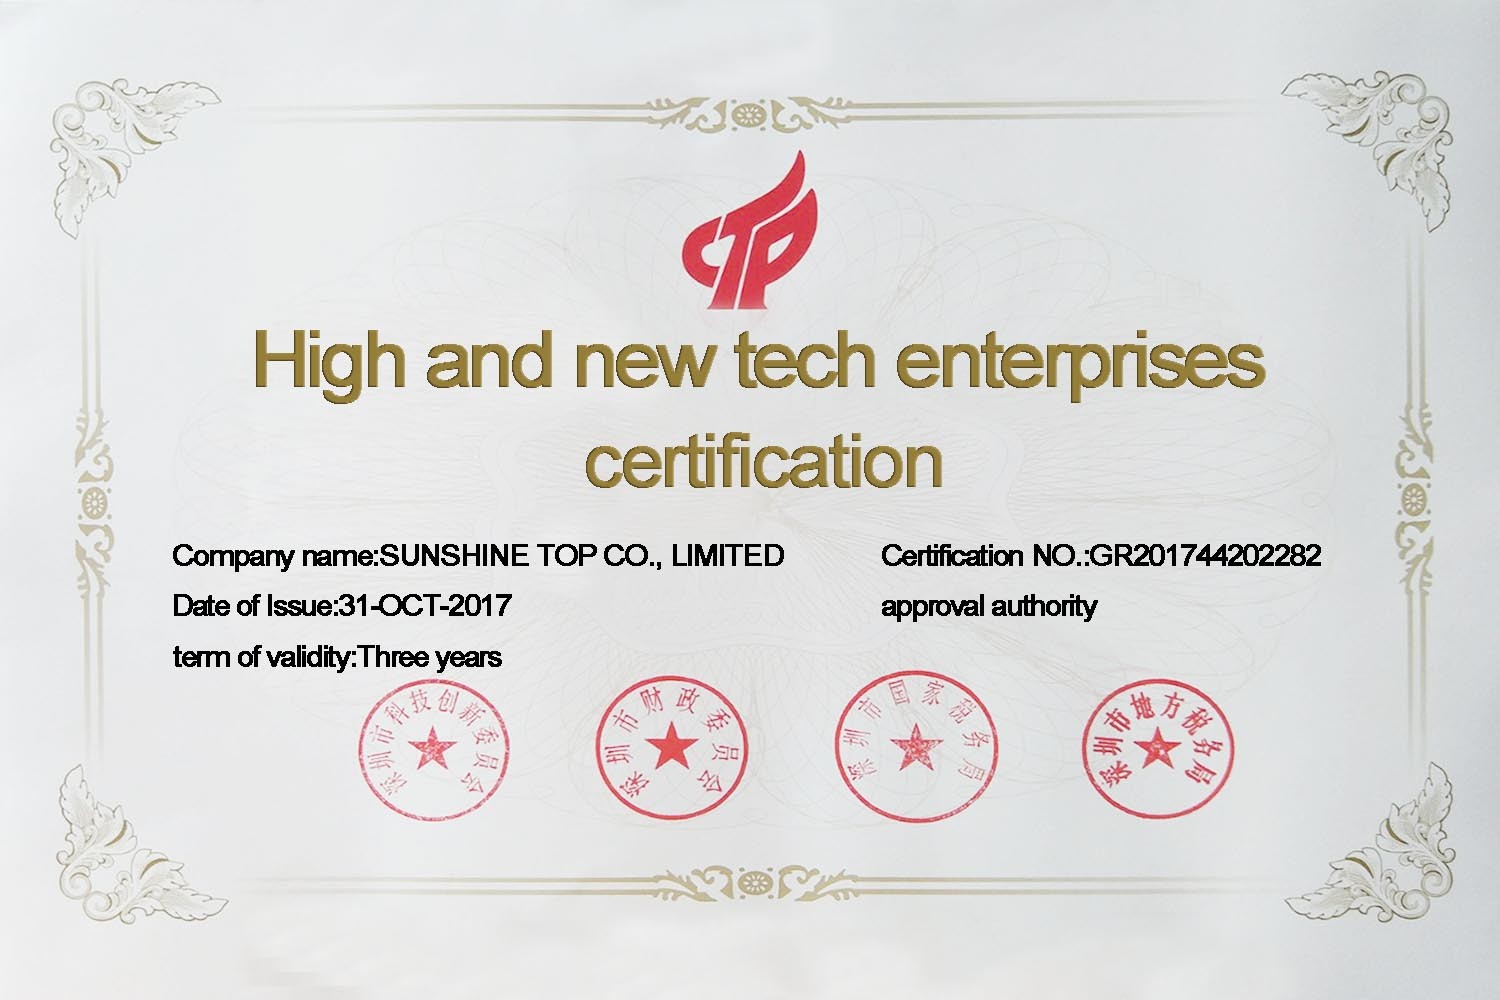 Certificação National Hi-Tech Enterprises